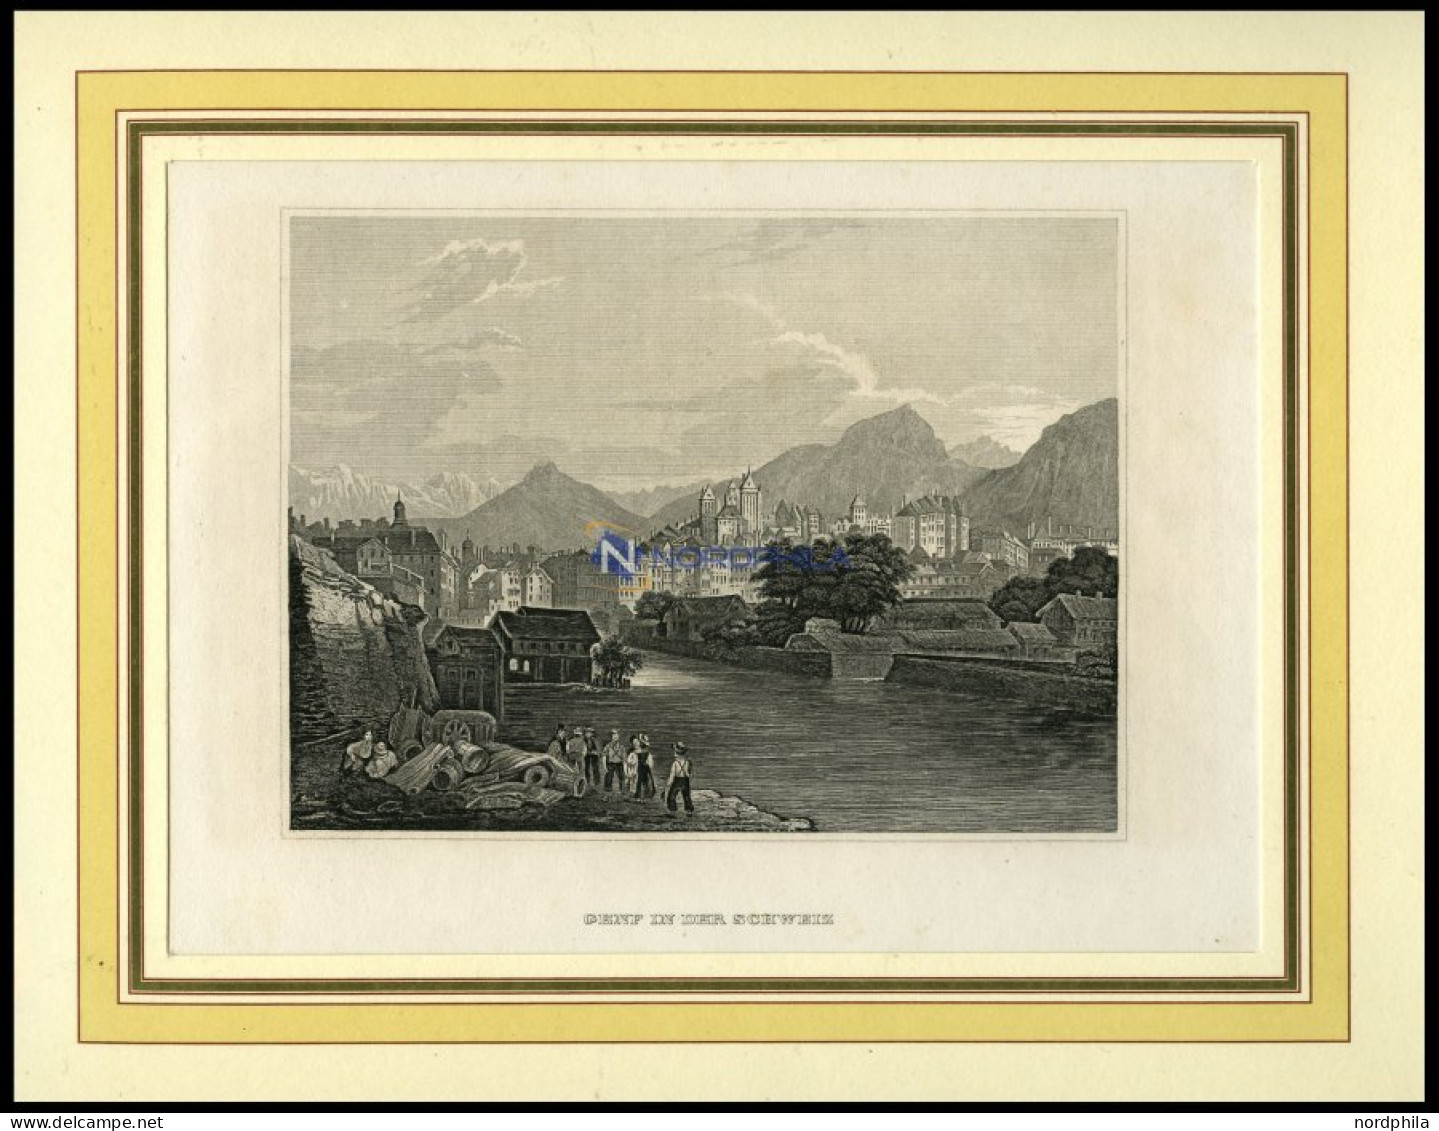 GENF, Gesamtansicht, Stahlstich Von B.I. Um 1860 - Lithographien